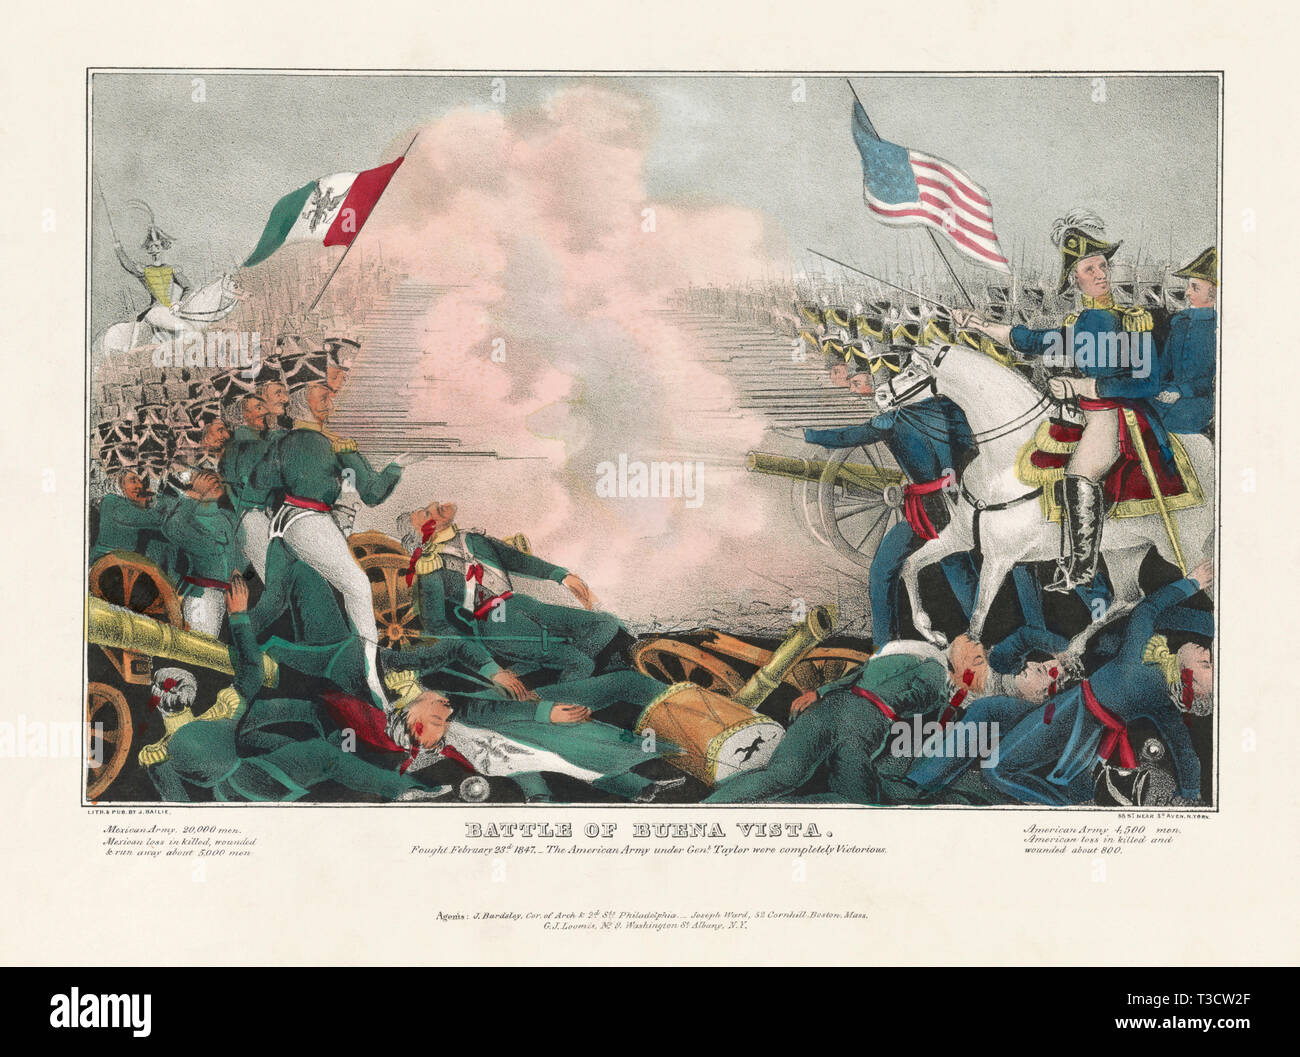 La batalla de Buena Vista, luchó en Febrero 23, 1847 - El ejército estadounidense bajo el General Taylor eran totalmente victoriosos, litografía, James Baillie, 1847 Foto de stock